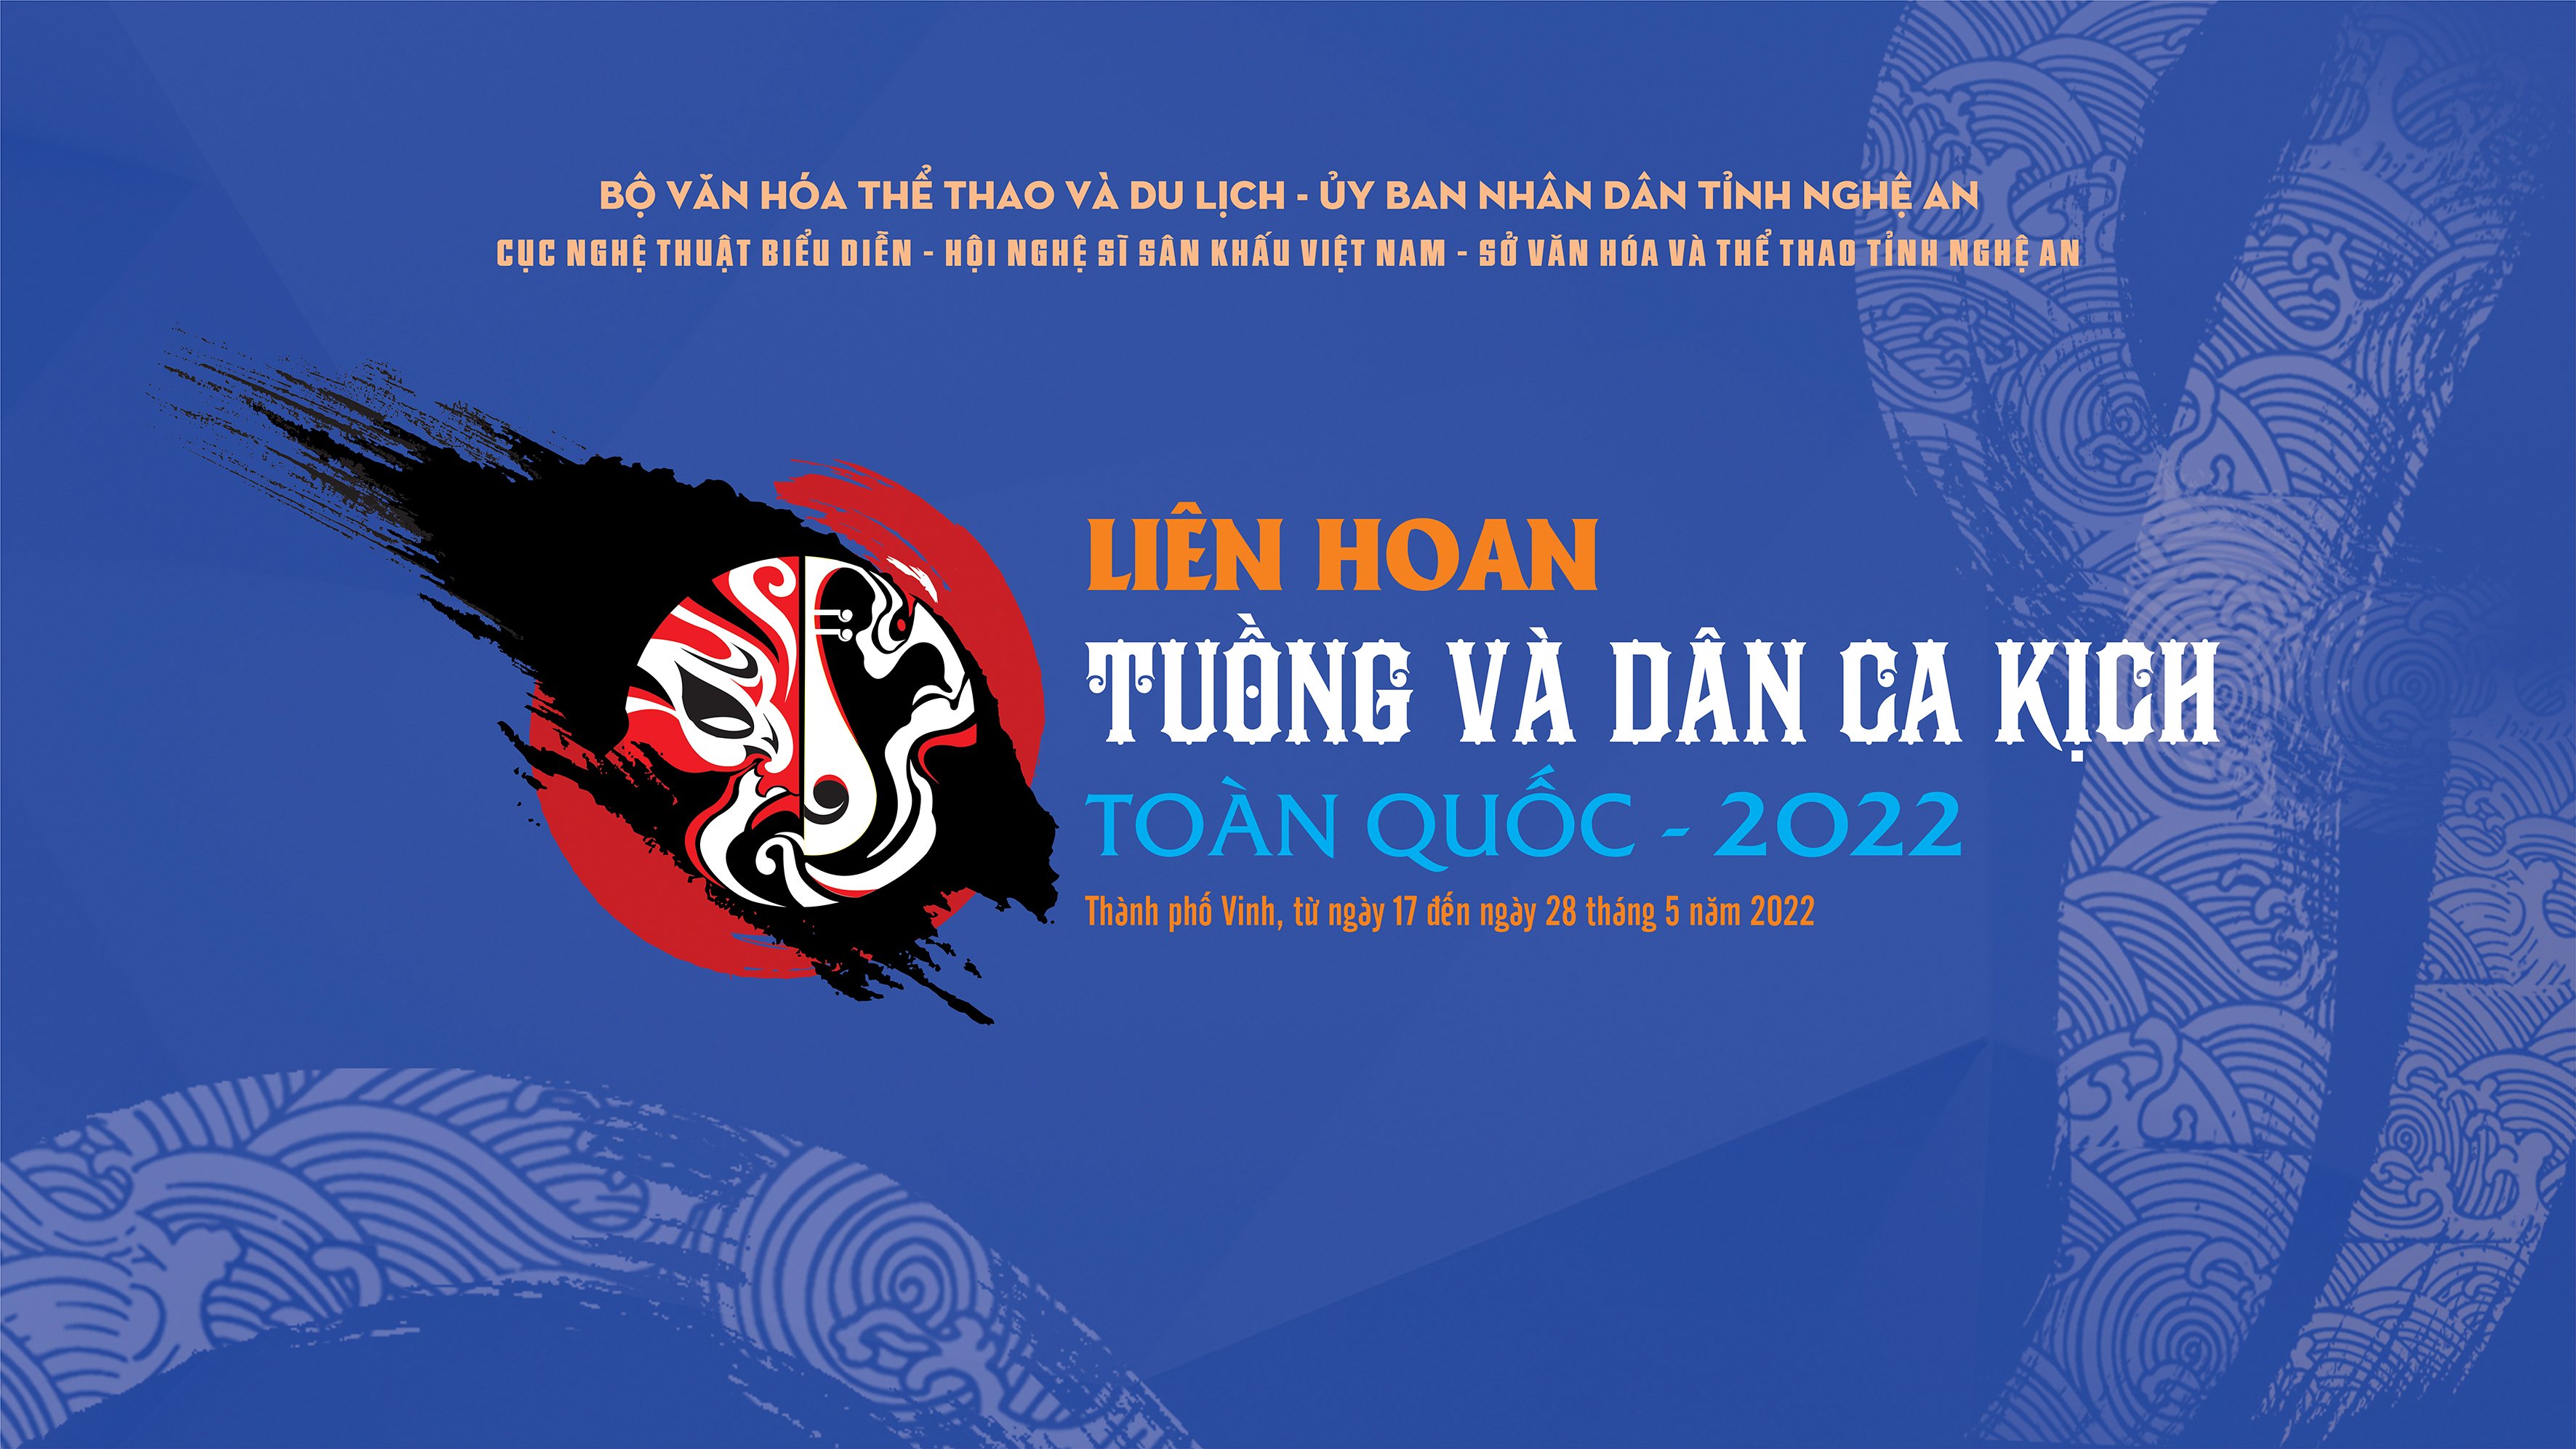 LIÊN HOAN TUỒNG VÀ DÂN CA KỊCH TOÀN QUỐC 2022 - Chiếc áo thiên nga, Nhà hát nghệ thuật Hát bội TPHCM